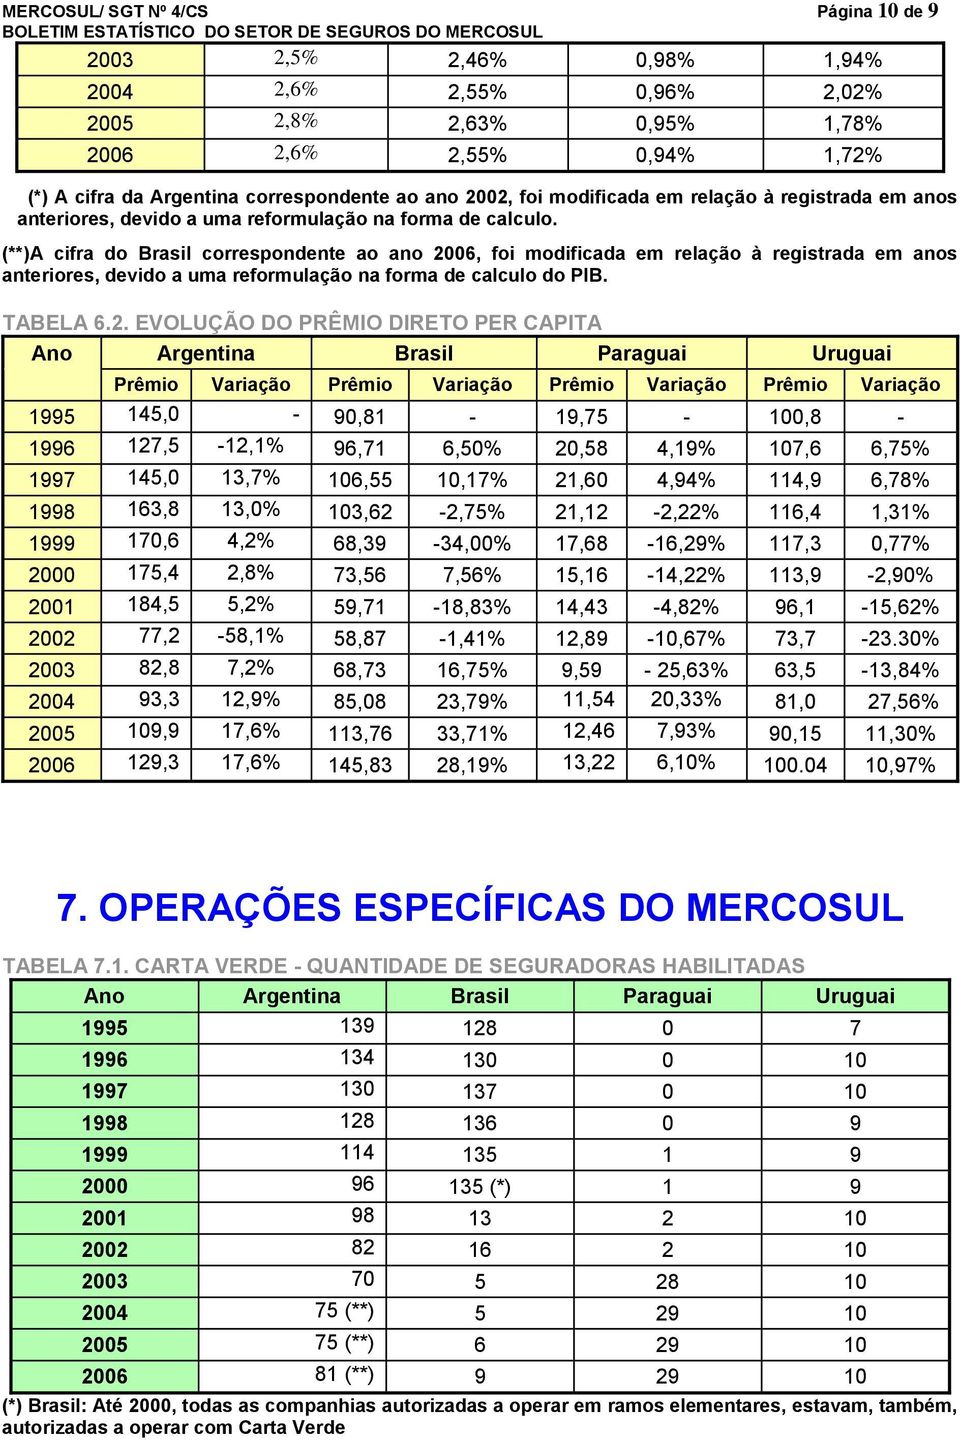 (**)A cifra do Brasil correspondente ao ano 20